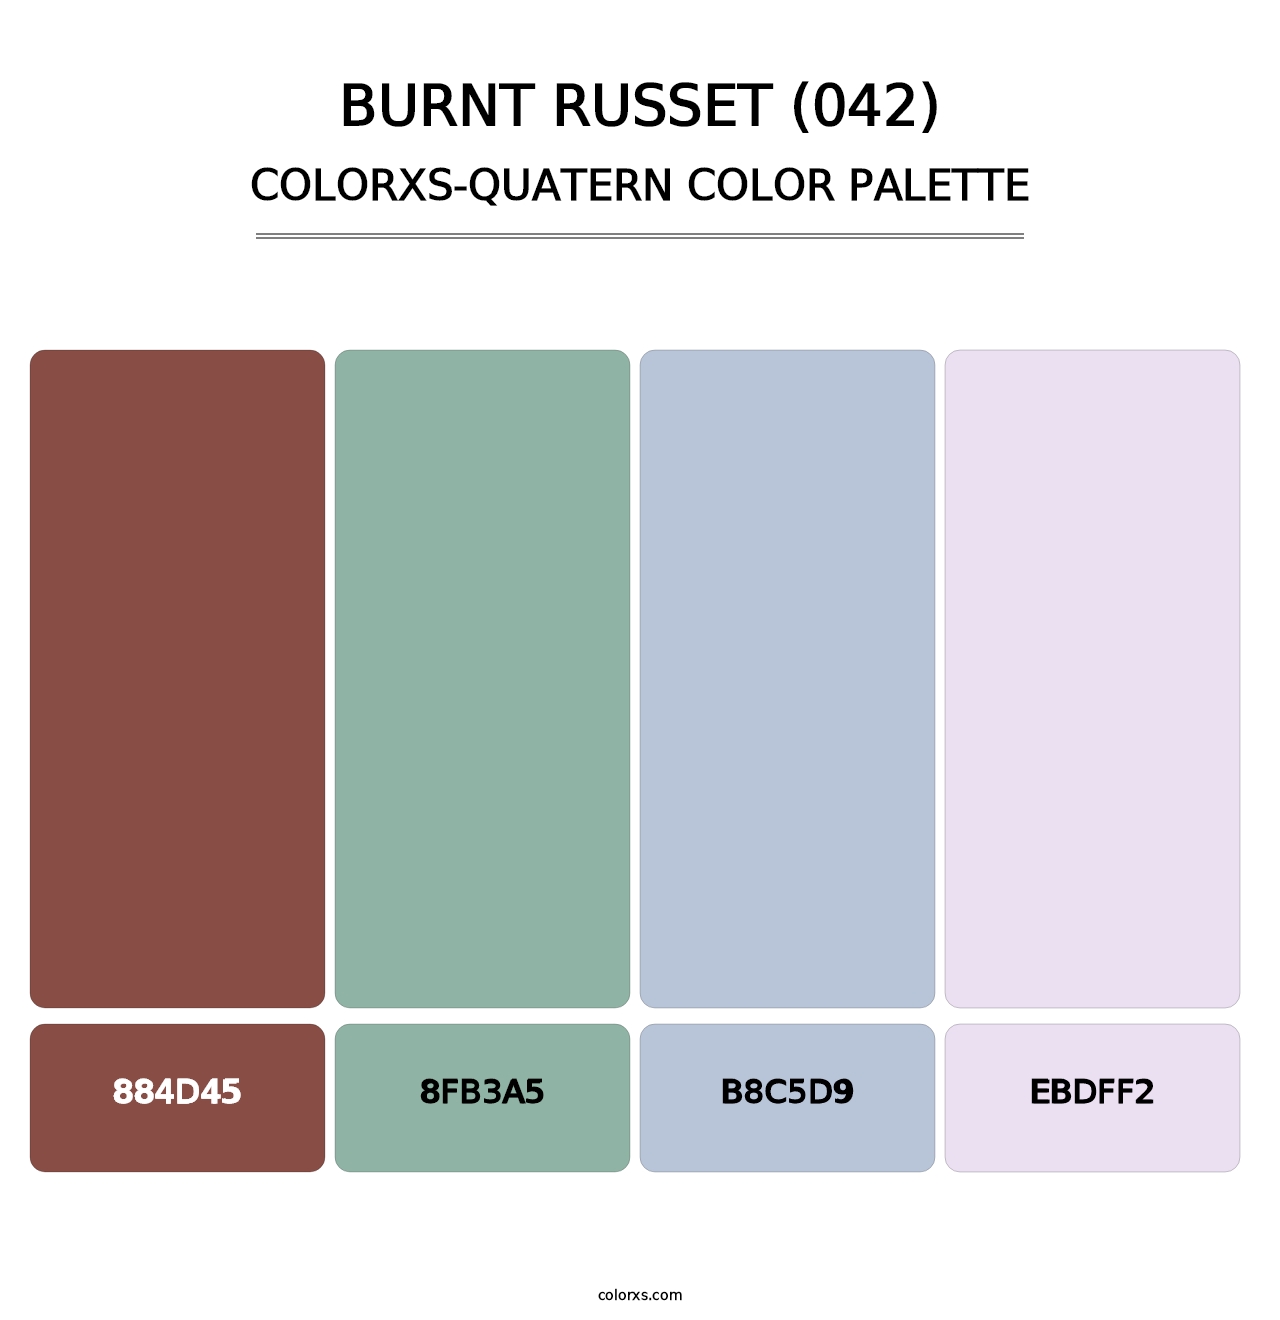 Burnt Russet (042) - Colorxs Quatern Palette